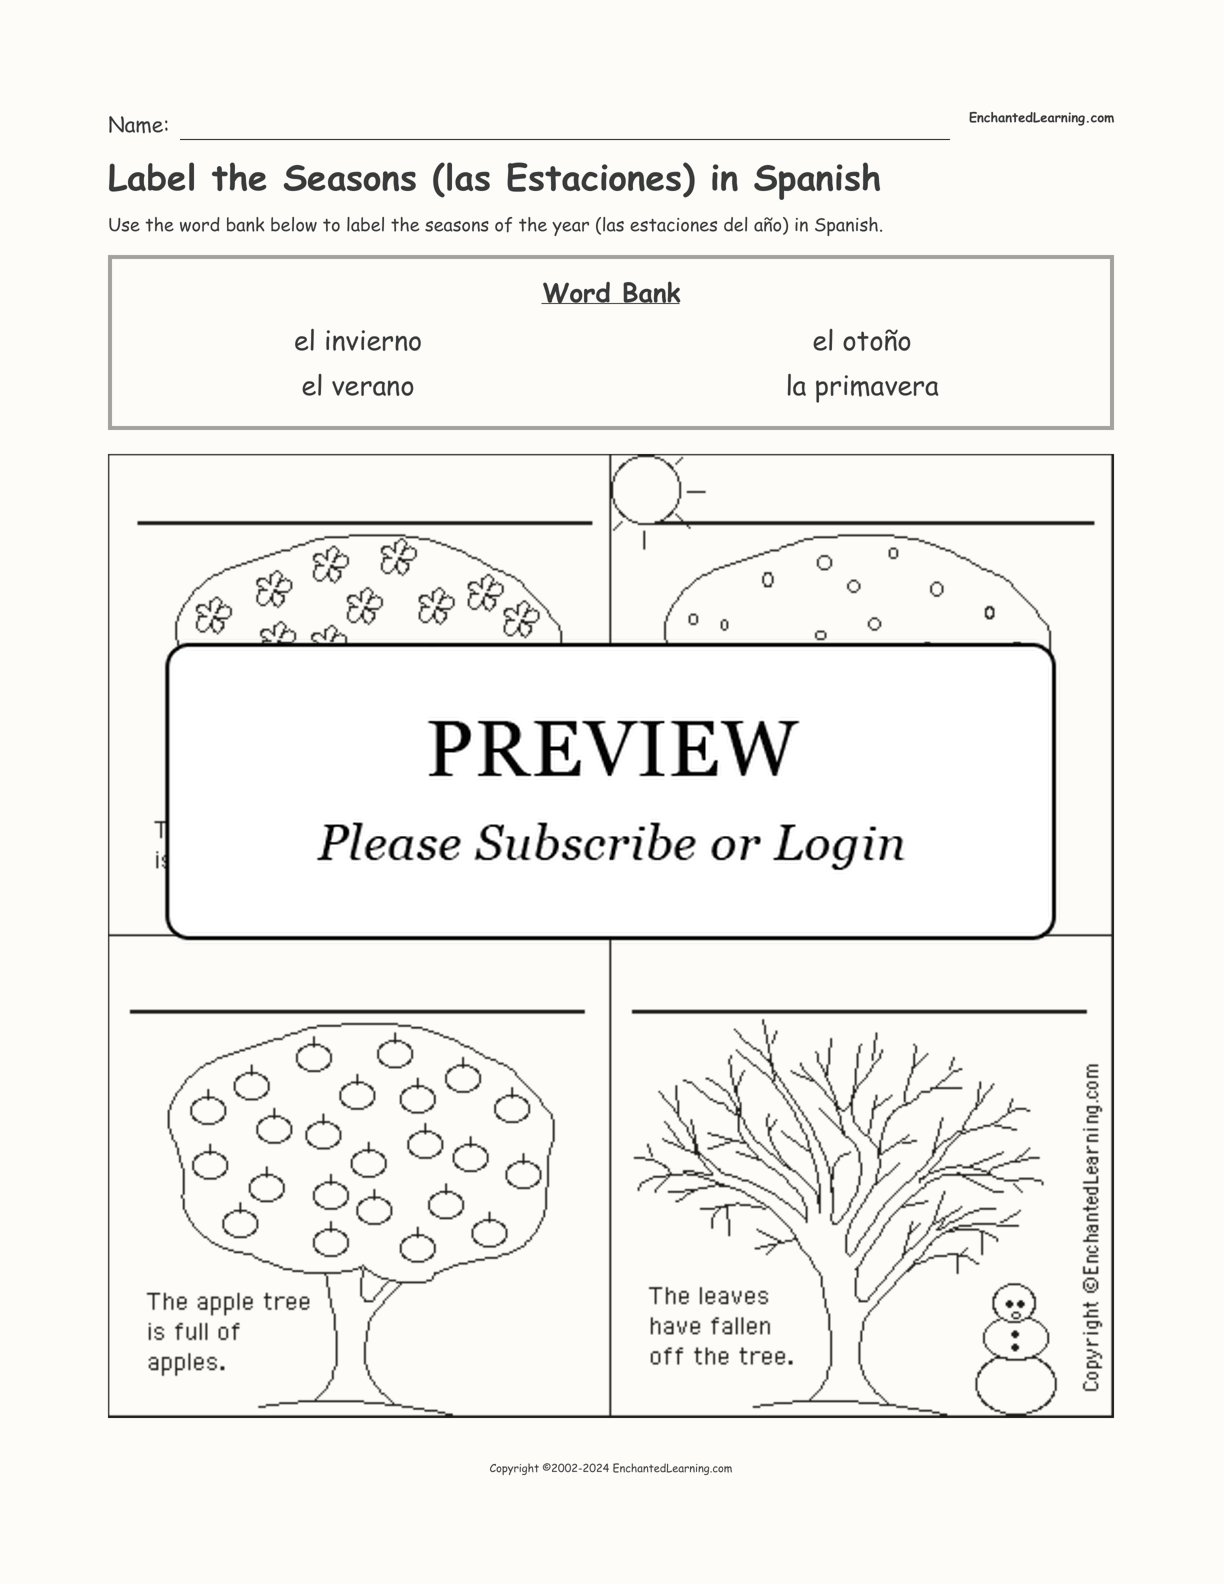 Label the Seasons (las Estaciones) in Spanish interactive worksheet page 1